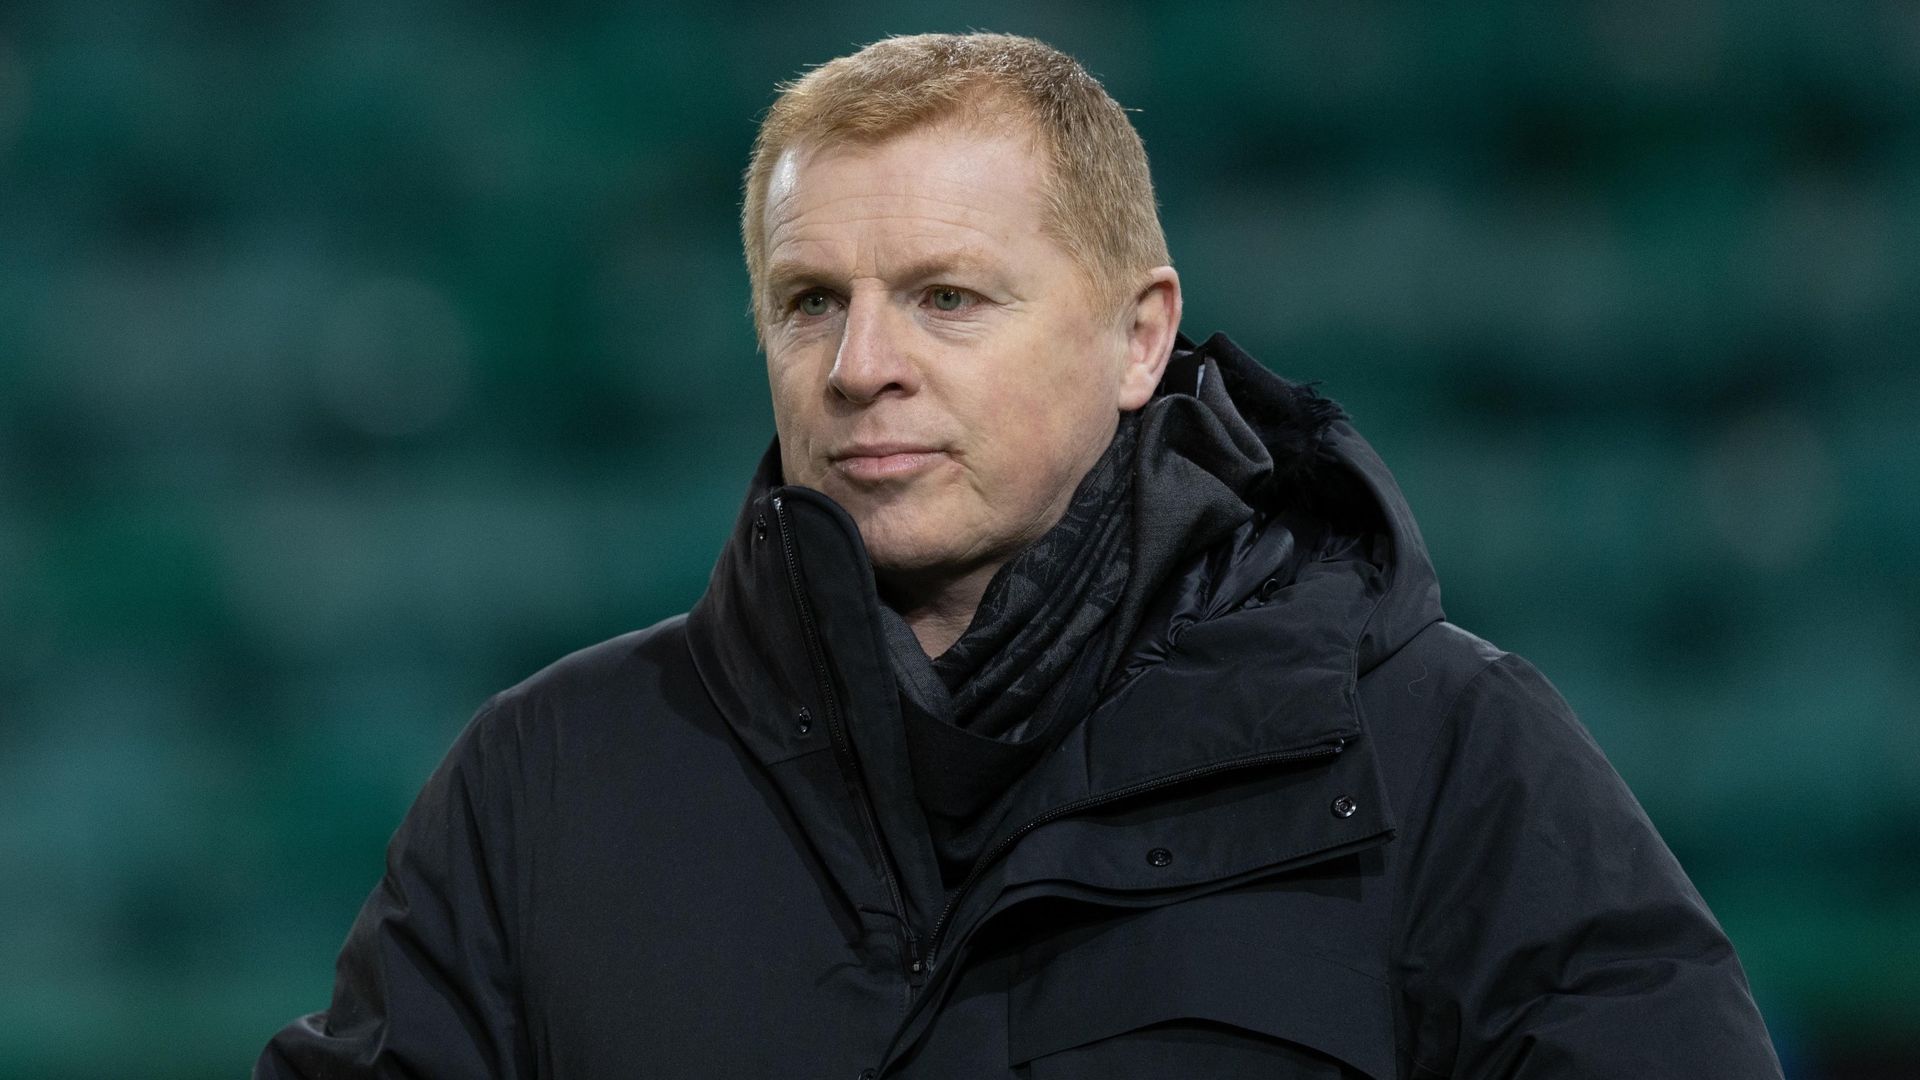 Do Aberdeen fans want Lennon as next manager?